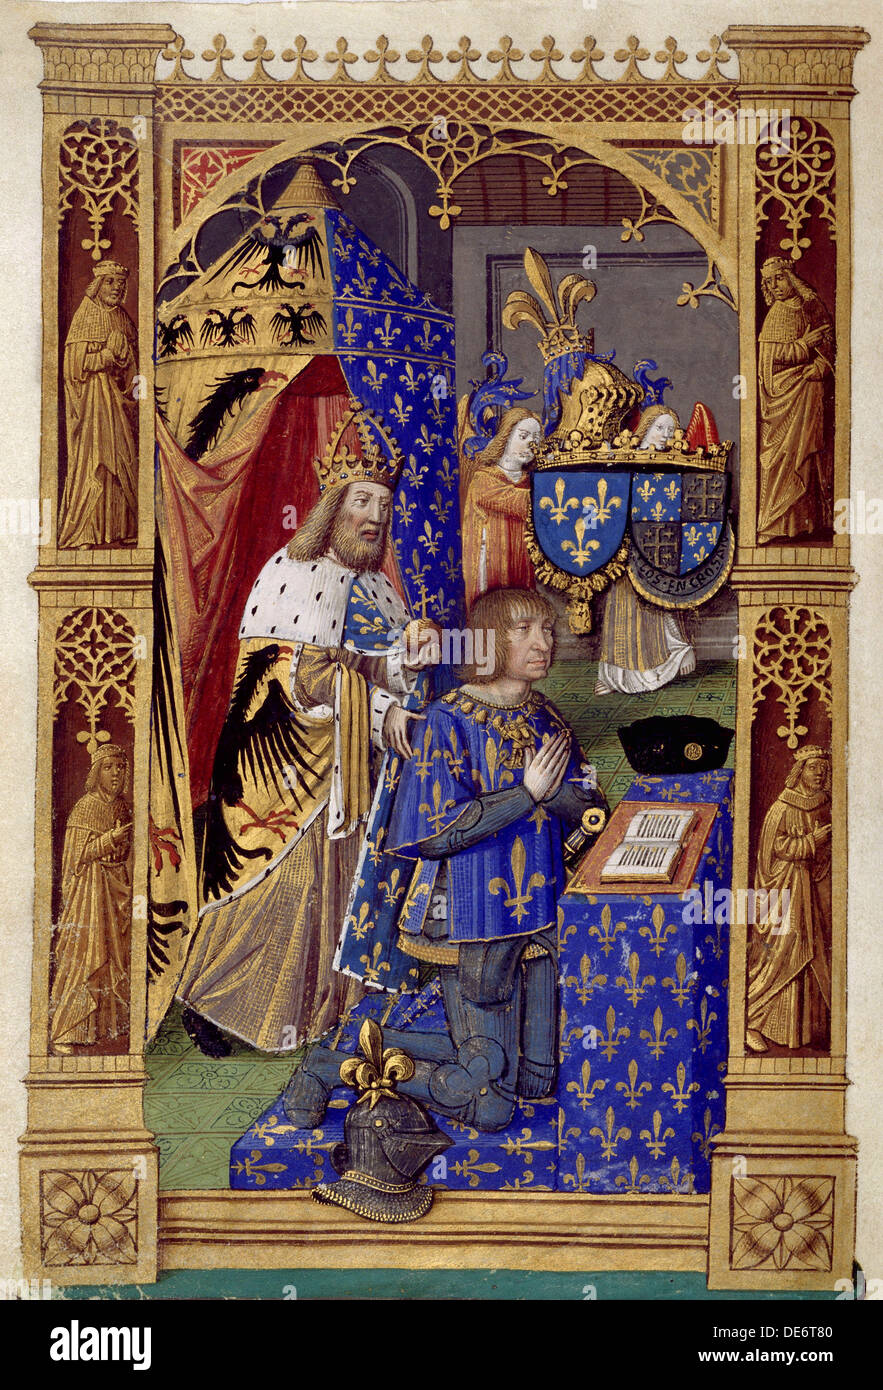 Luis XII de Francia (Libro de Horas de Carlos VIII, rey de Francia), entre 1494 y 1496. Artista: Vérard, Antoine (activo 1485-1512) Foto de stock